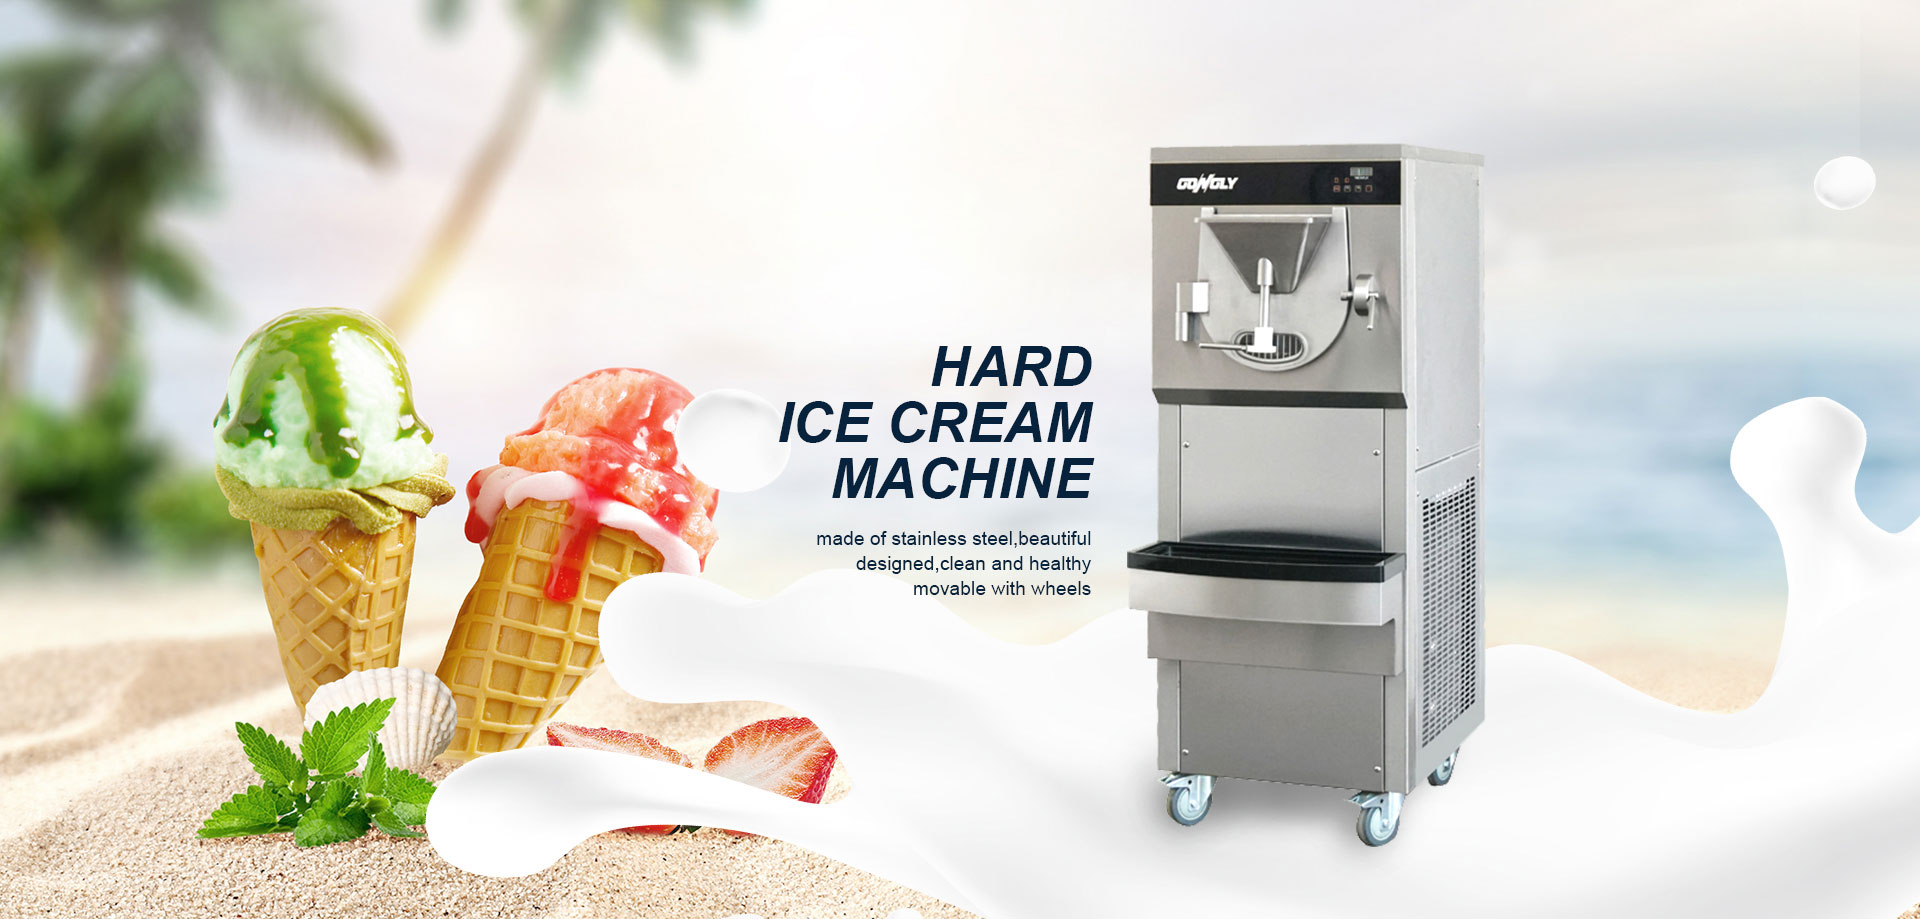 HARD ICE CREAM MACHINE